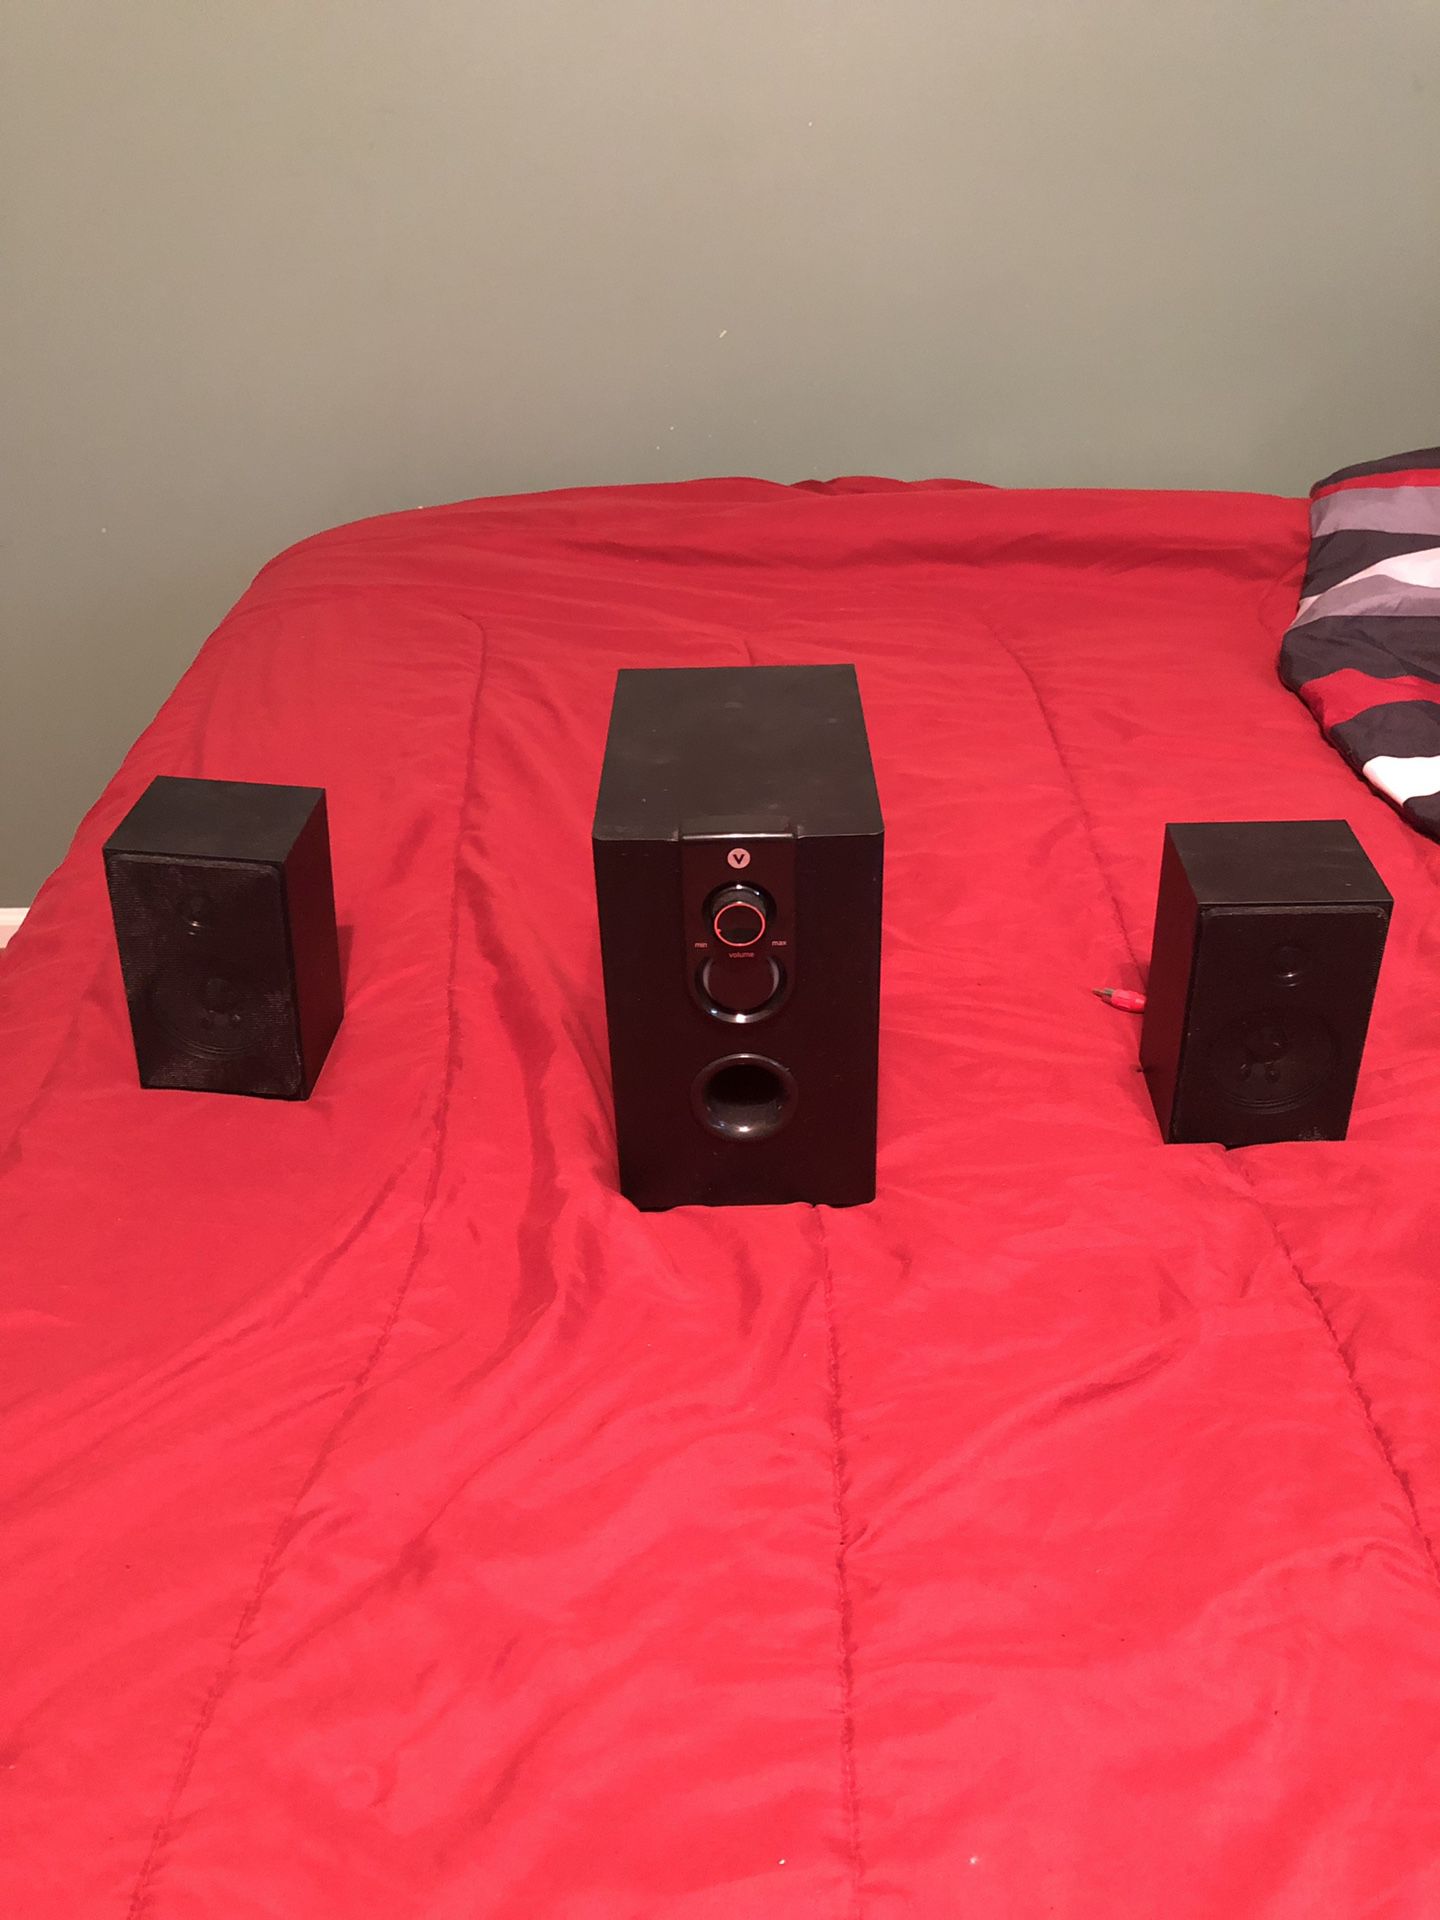 Vivitar 2.2 subwoofer speaker system